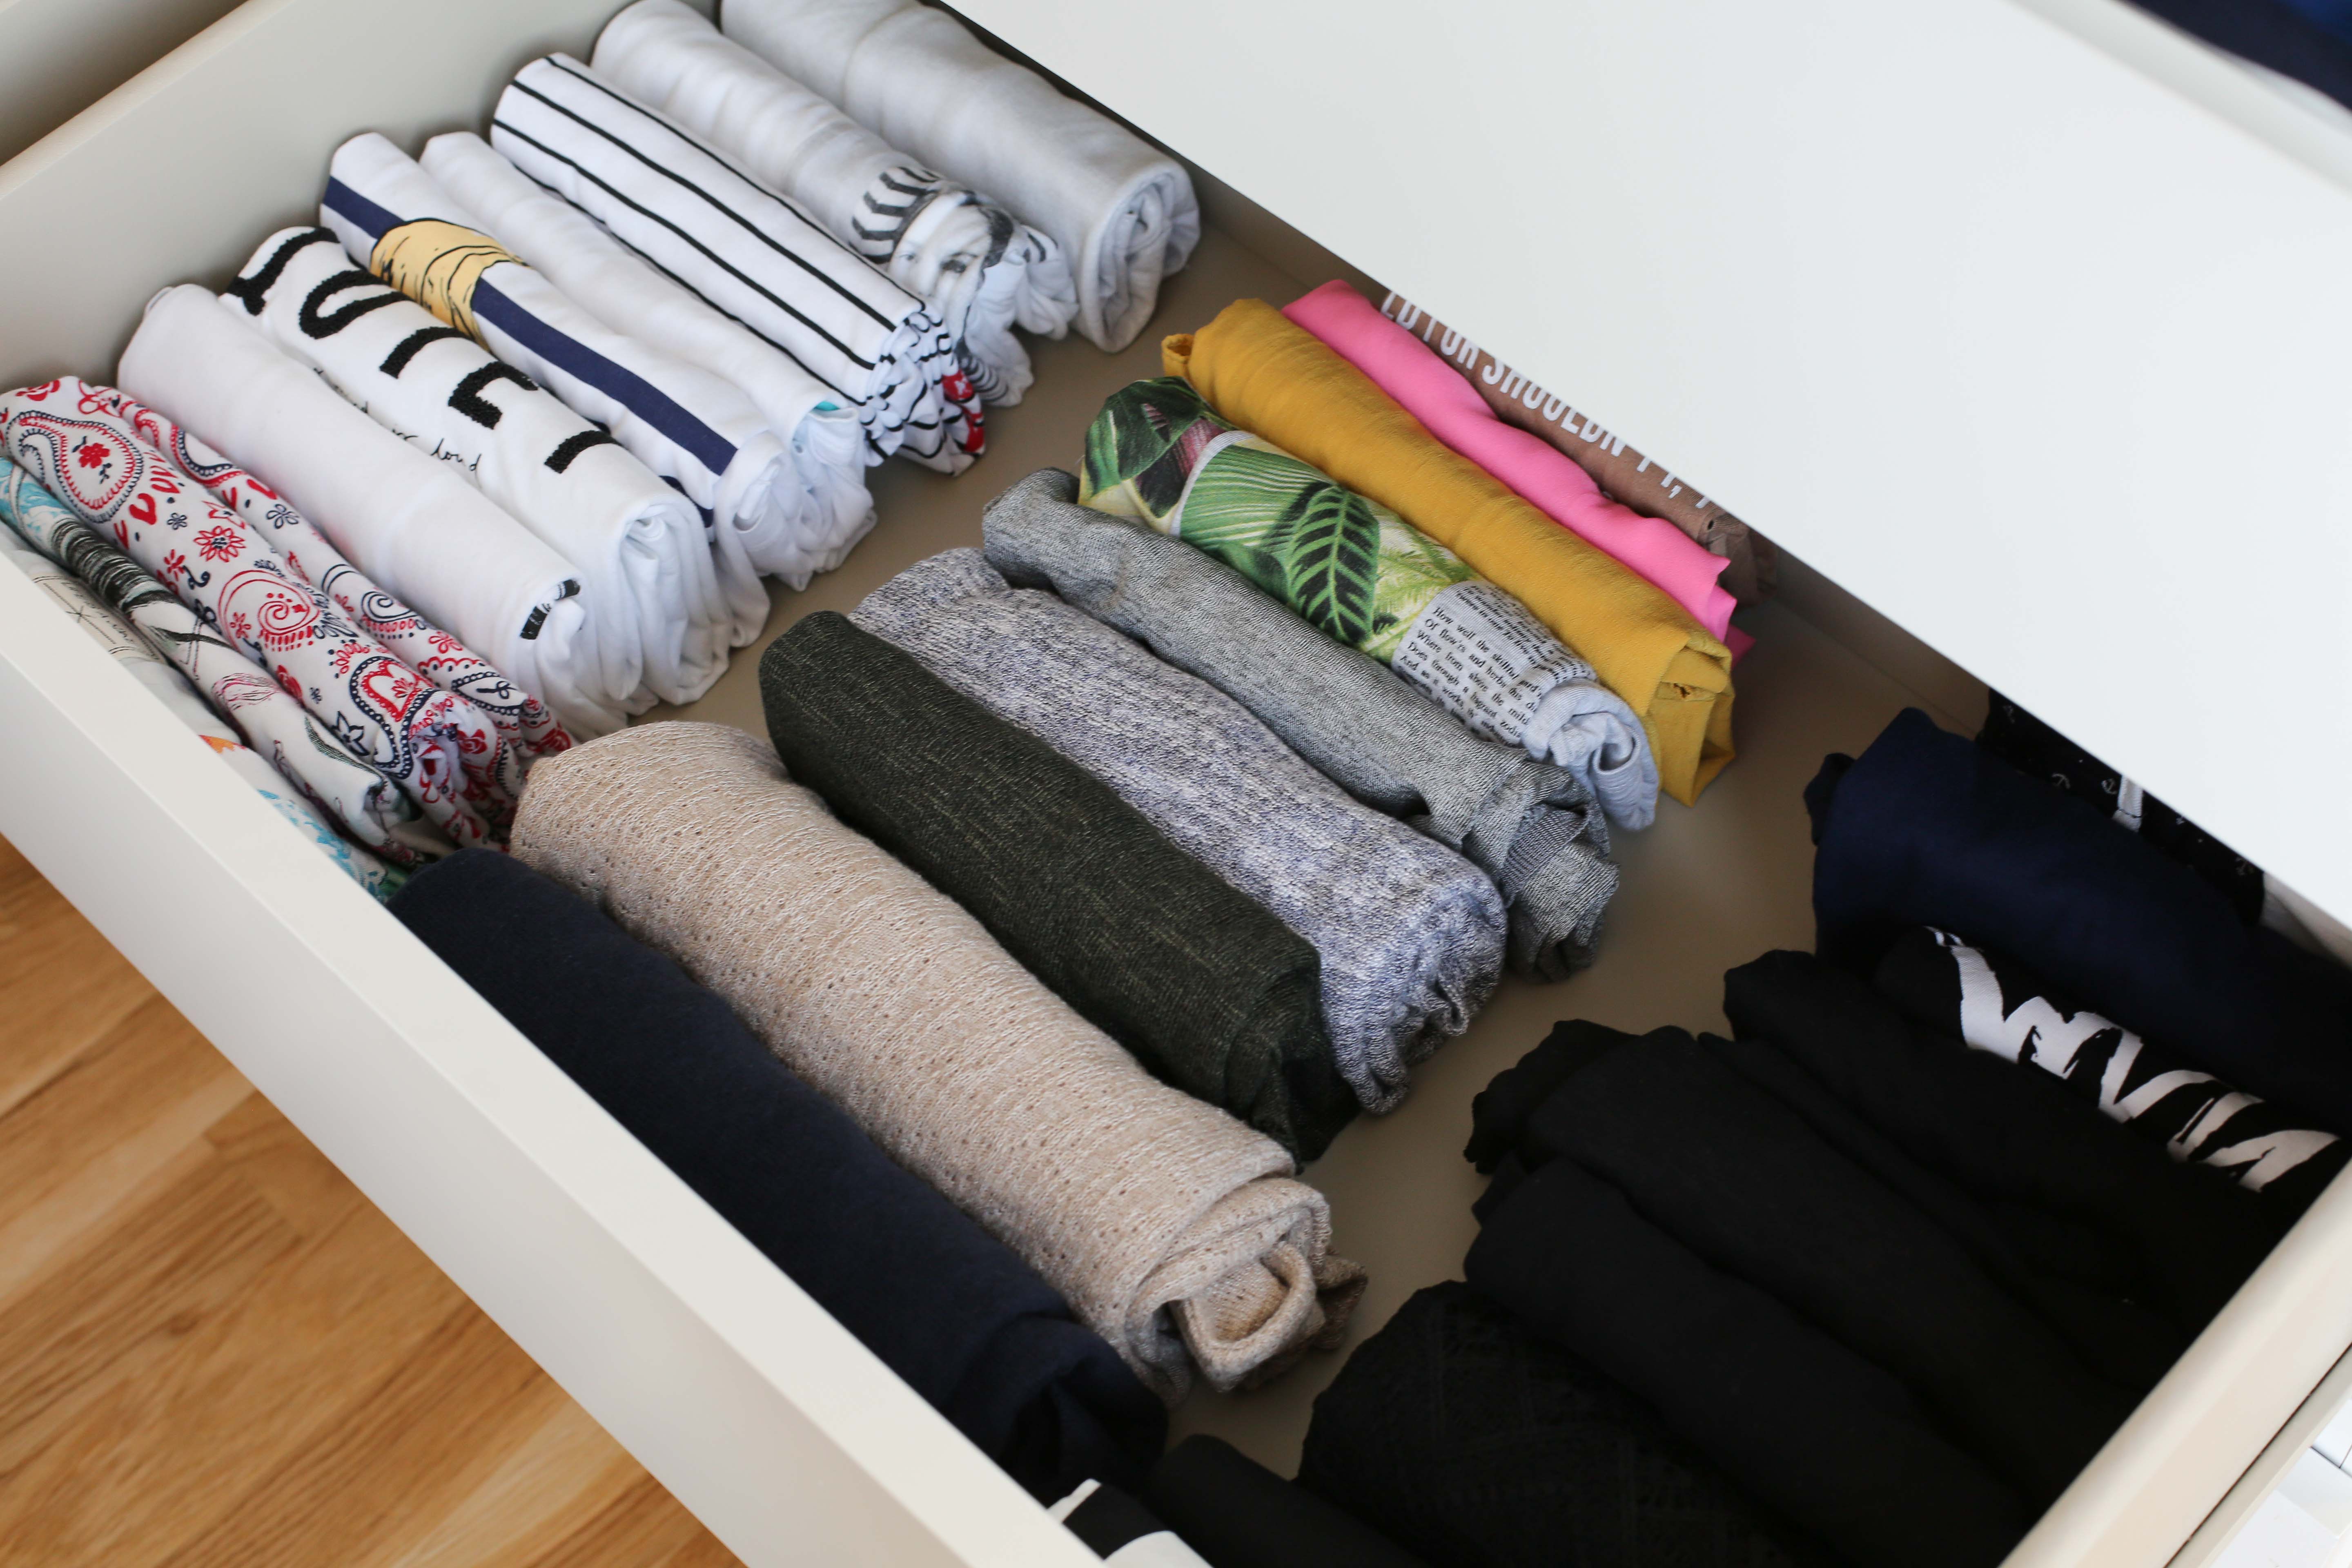 5 μαγικές συμβουλές για να διπλώσεις όλα σου τα ρούχα όπως η Marie Kondo.